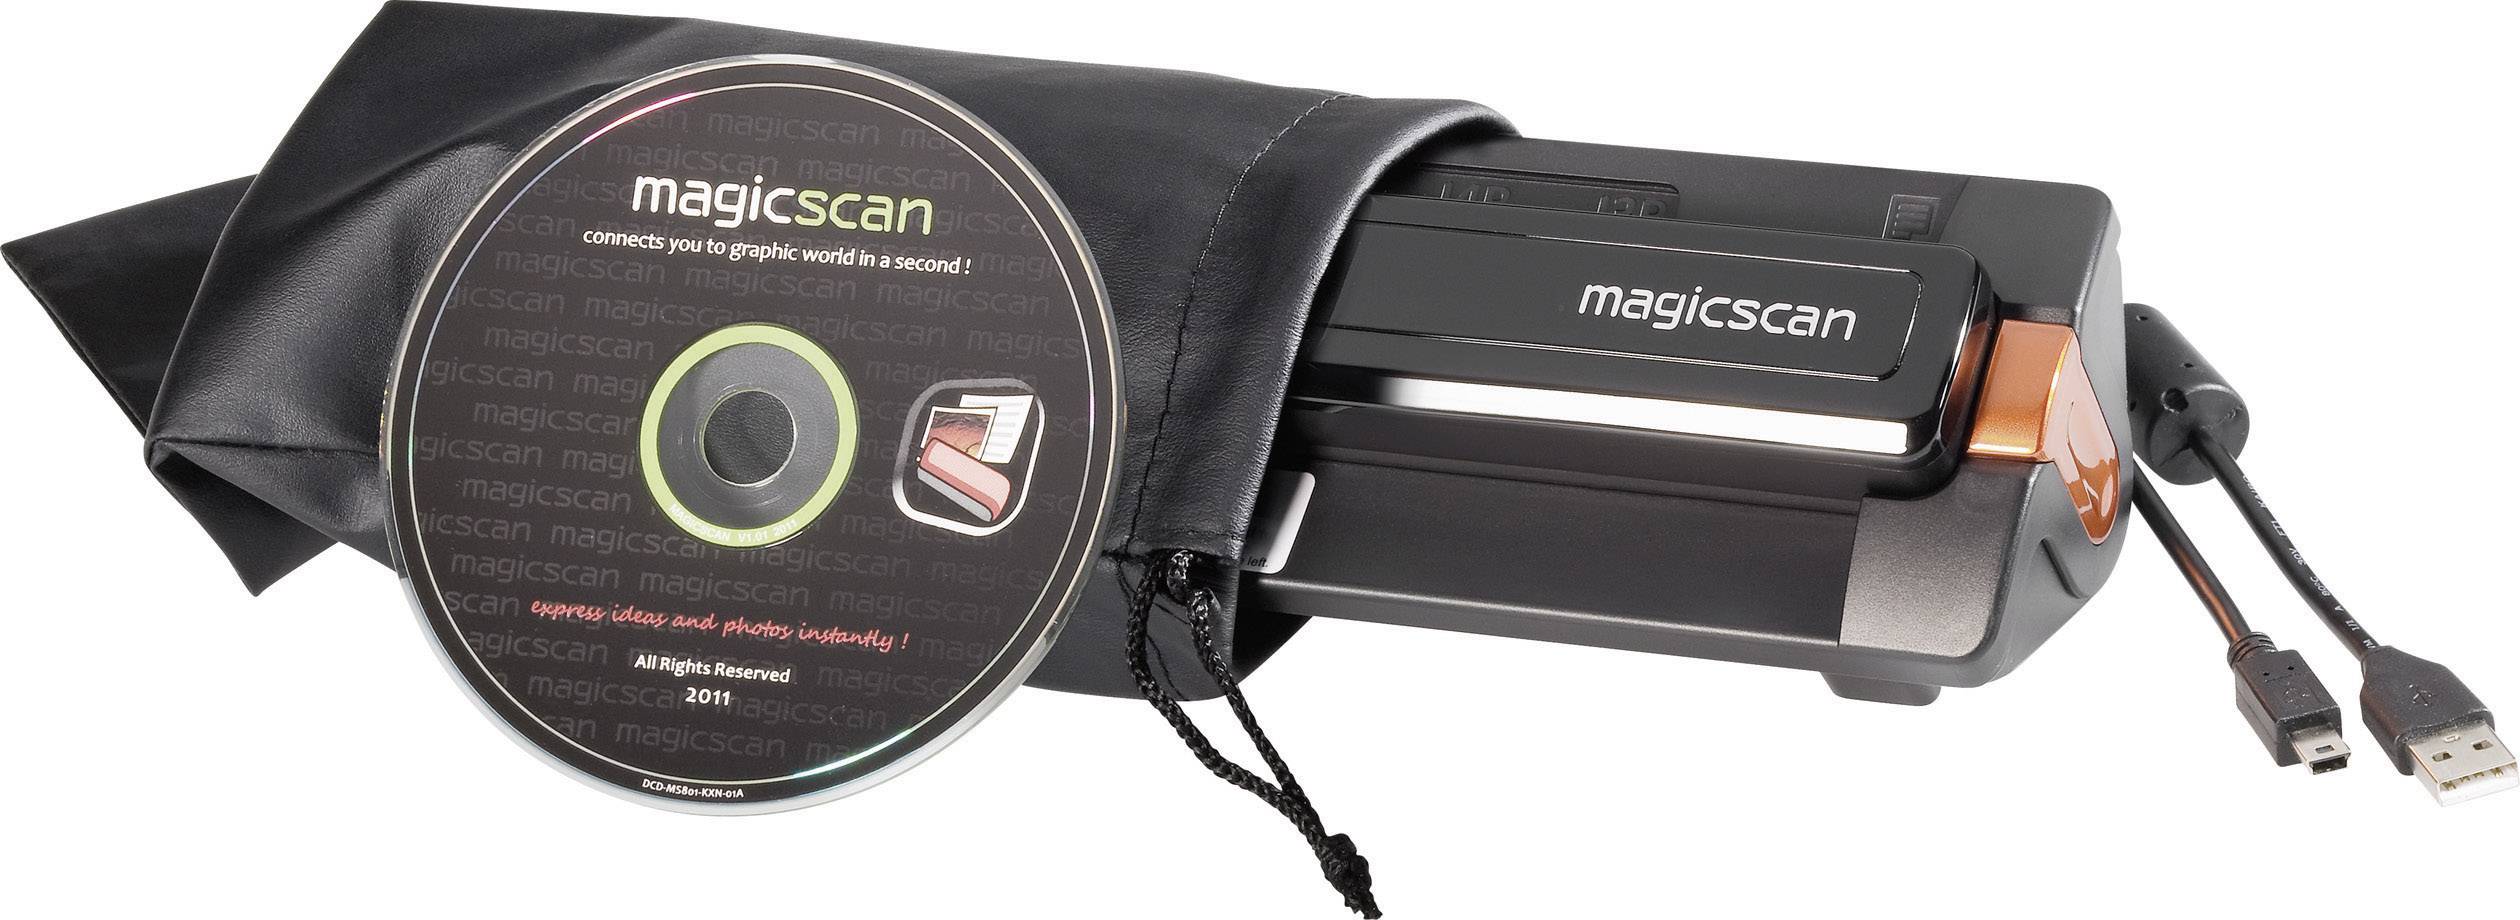 magicscan t4ed software